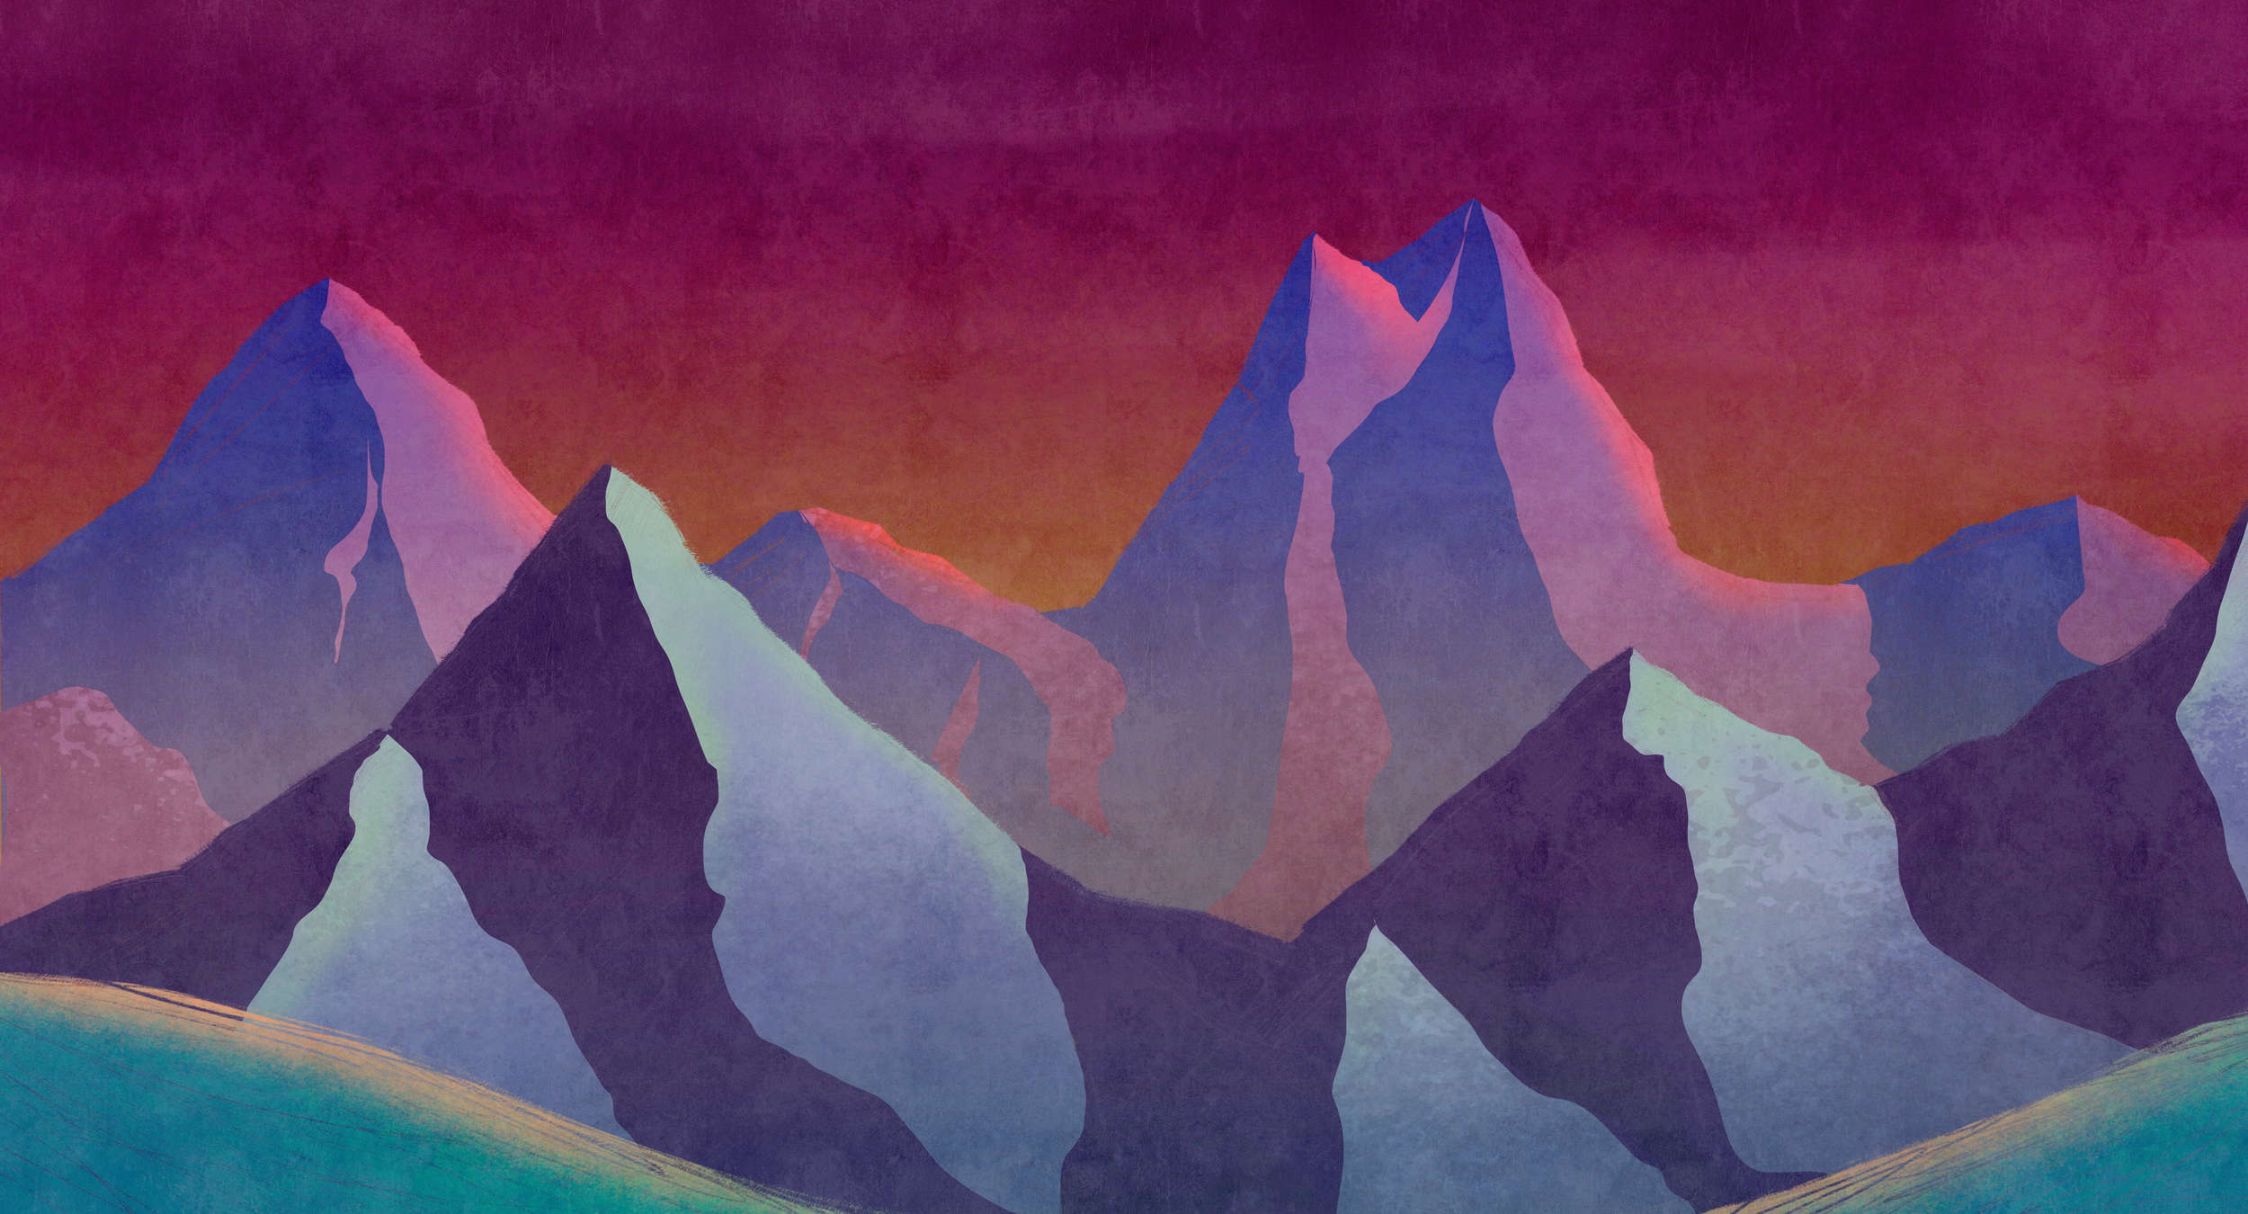             Fotomural »altitude 1« - Montañas abstractas en colores neón con textura de yeso vintage - Tela no tejida mate y lisa
        